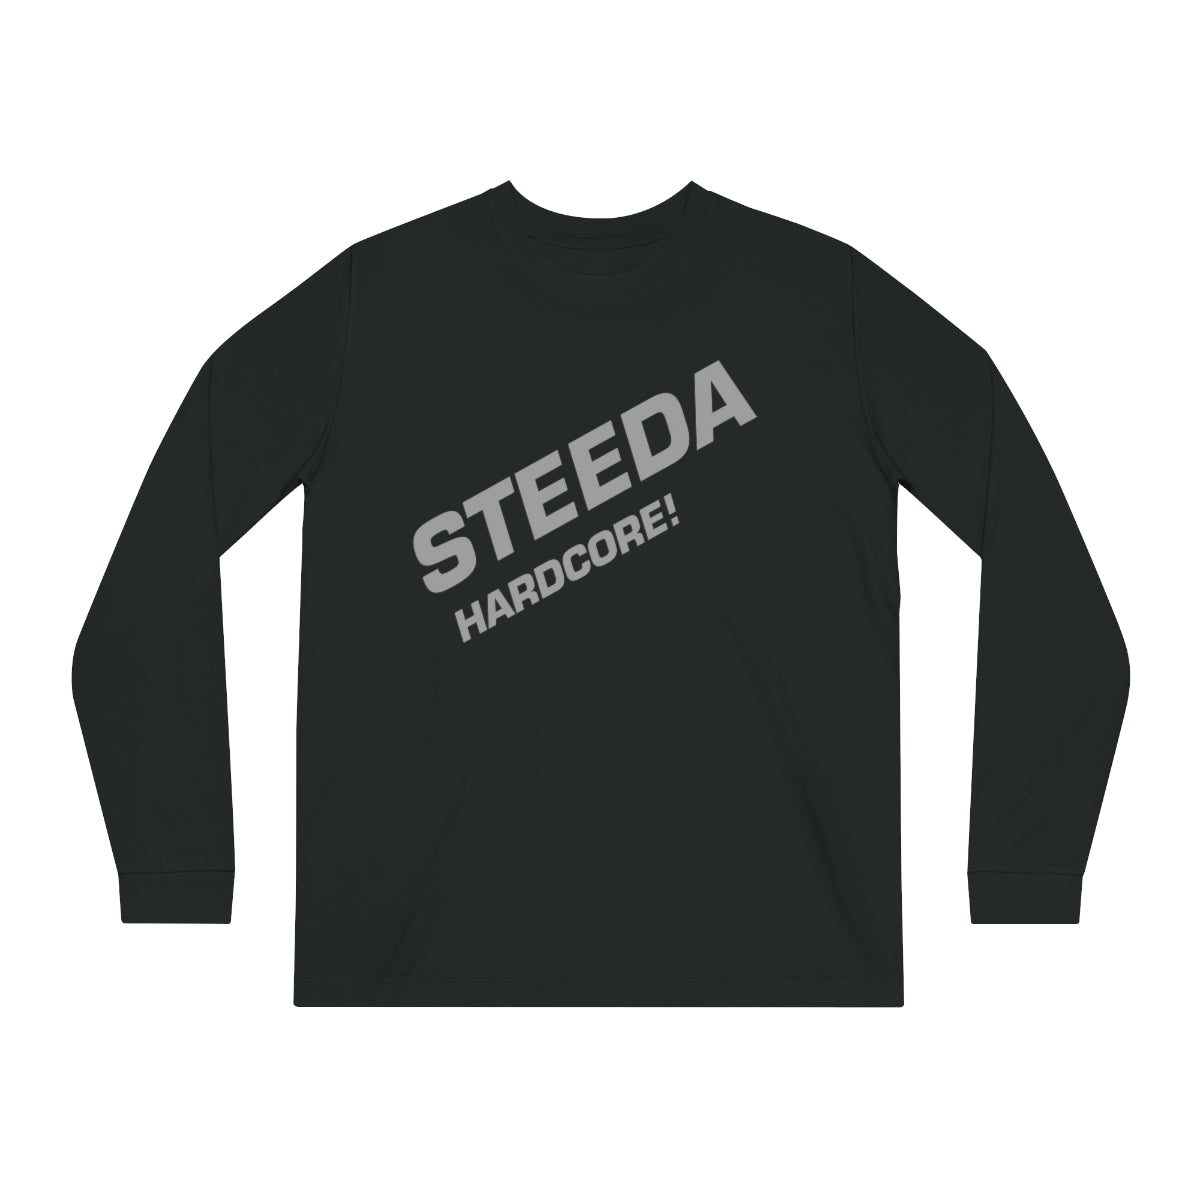 Steeda للجنسين "المتشددين!" قميص طويل الأكمام - أسود / كحلي